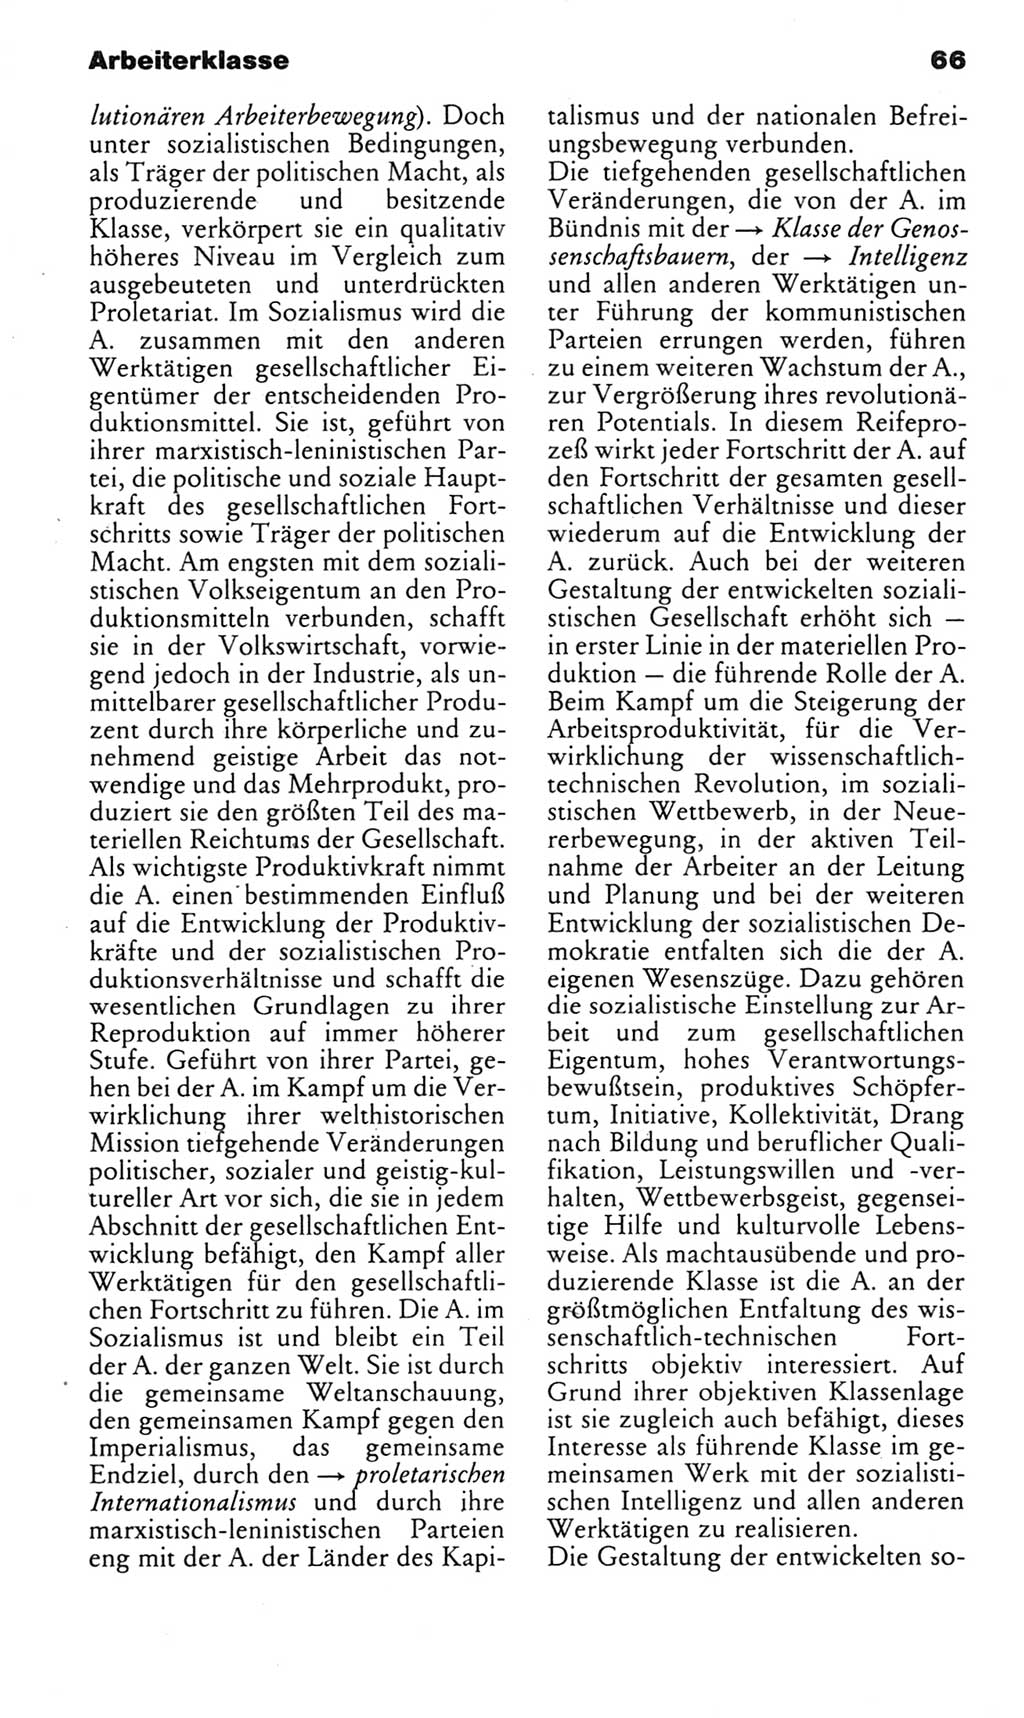 Kleines politisches Wörterbuch [Deutsche Demokratische Republik (DDR)] 1985, Seite 66 (Kl. pol. Wb. DDR 1985, S. 66)